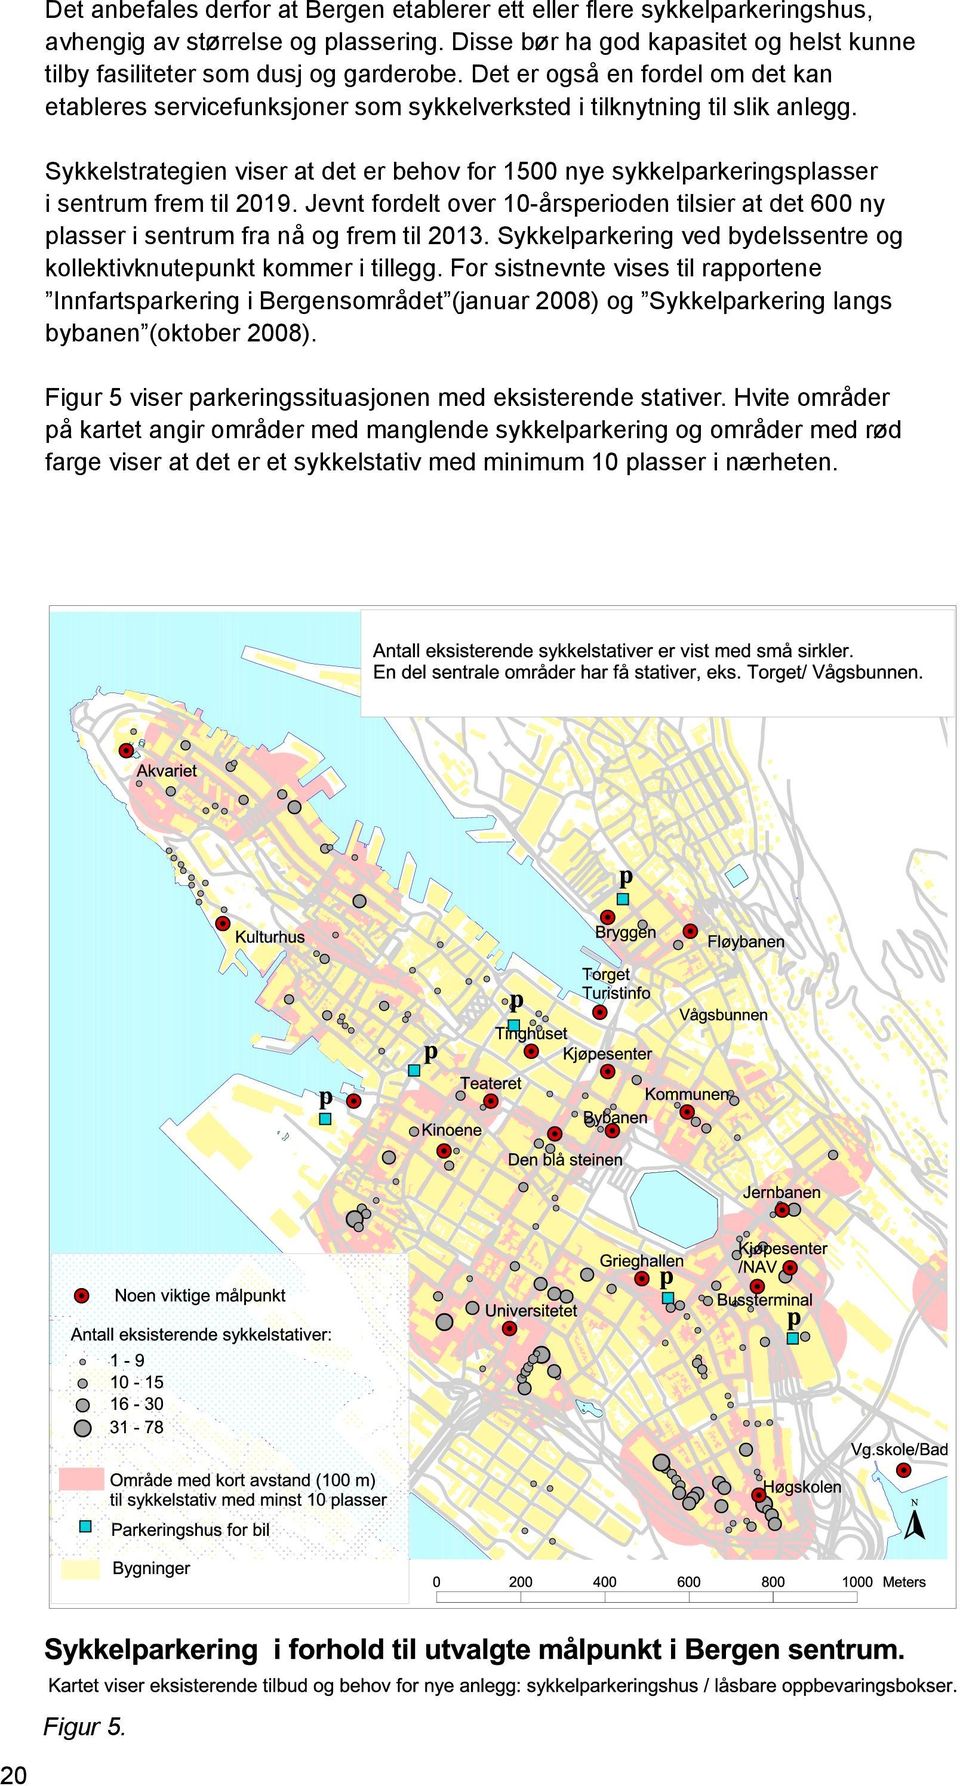 Sykkelstrategien viser at det er behov for 1500 nye sykkelparkeringsplasser i sentrum frem til 2019. Jevnt fordelt over 10-årsperioden tilsier at det 600 ny plasser i sentrum fra nå og frem til 2013.